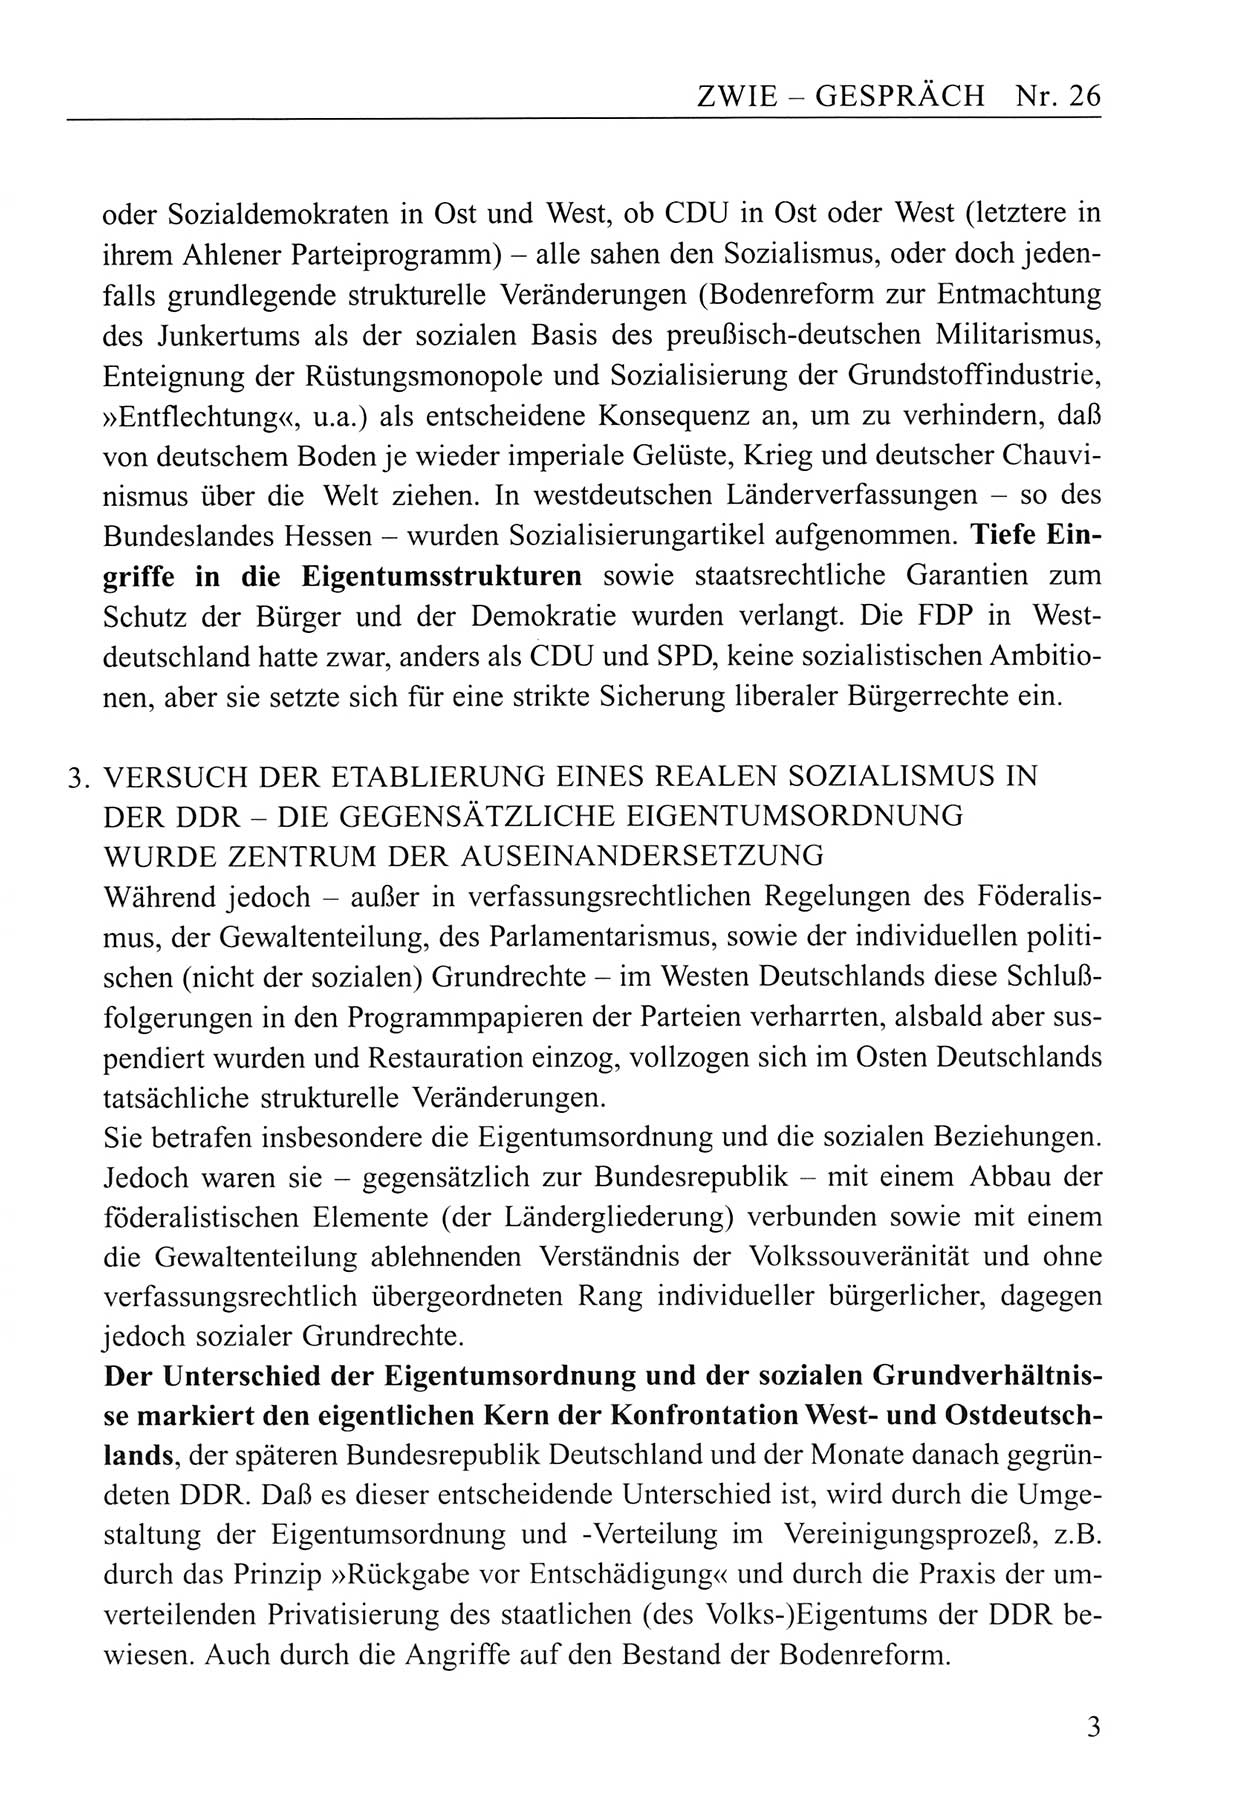 Zwie-Gespräch, Beiträge zum Umgang mit der Staatssicherheits-Vergangenheit [Deutsche Demokratische Republik (DDR)], Ausgabe Nr. 26, Berlin 1995, Seite 3 (Zwie-Gespr. Ausg. 26 1995, S. 3)